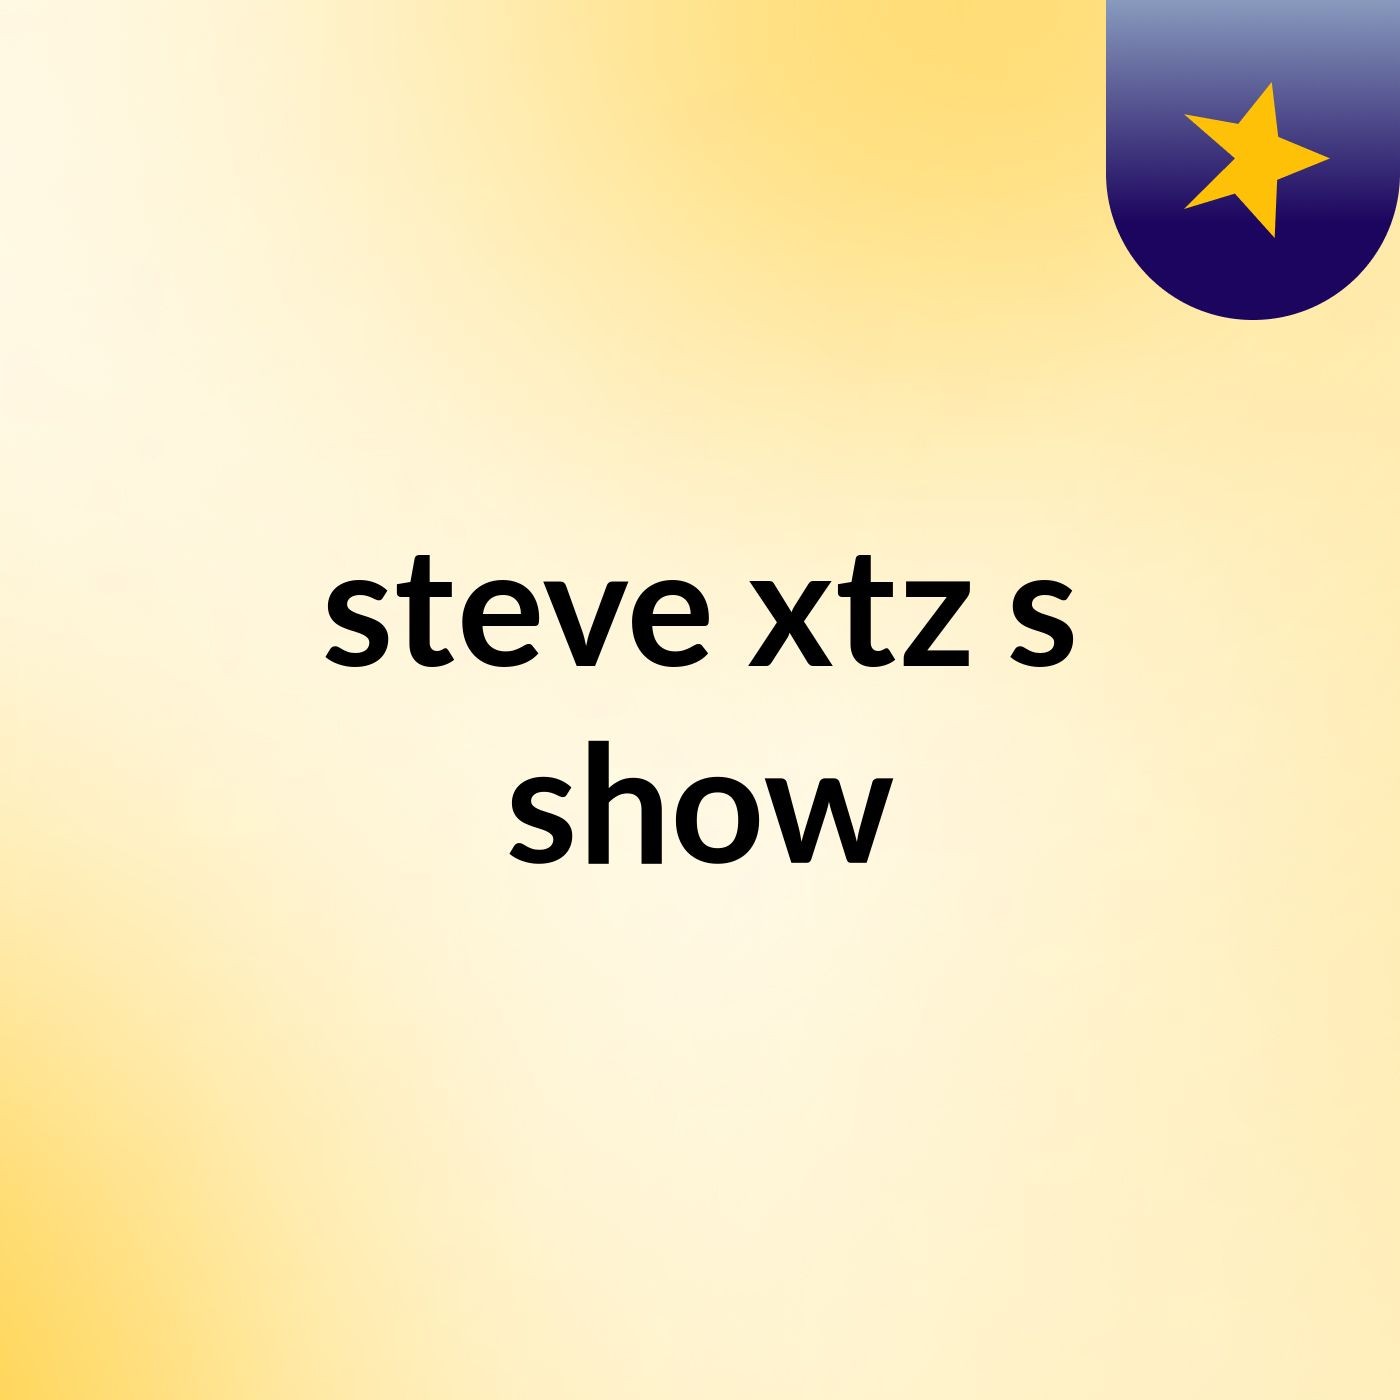 steve xtz's show